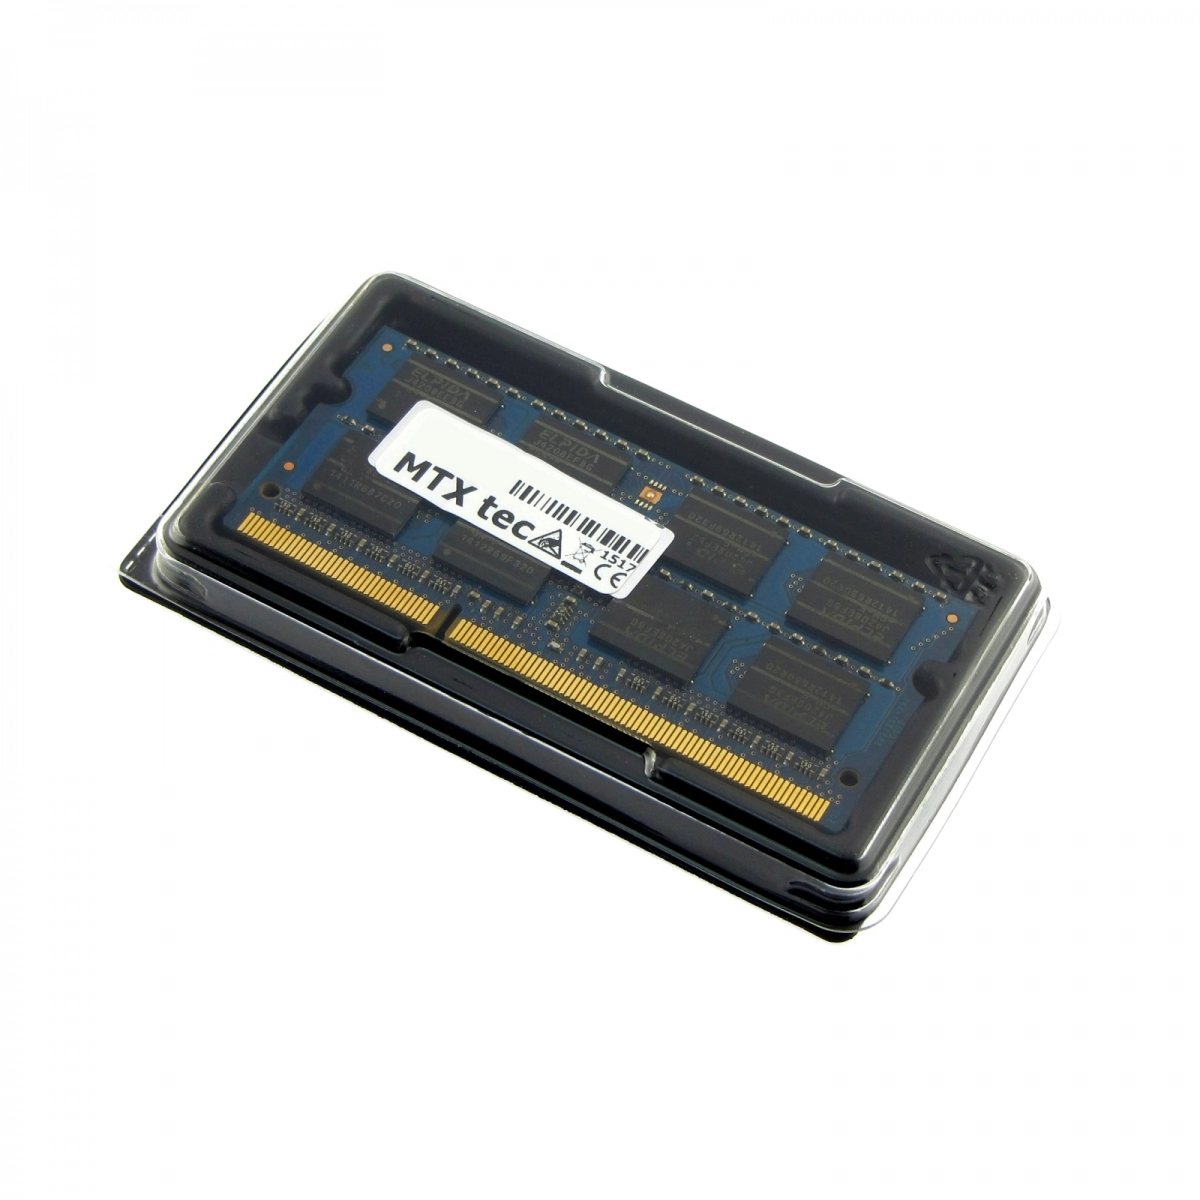 MTXtec Arbeitsspeicher 4 GB RAM für MEDION Akoya E7416 MD99371